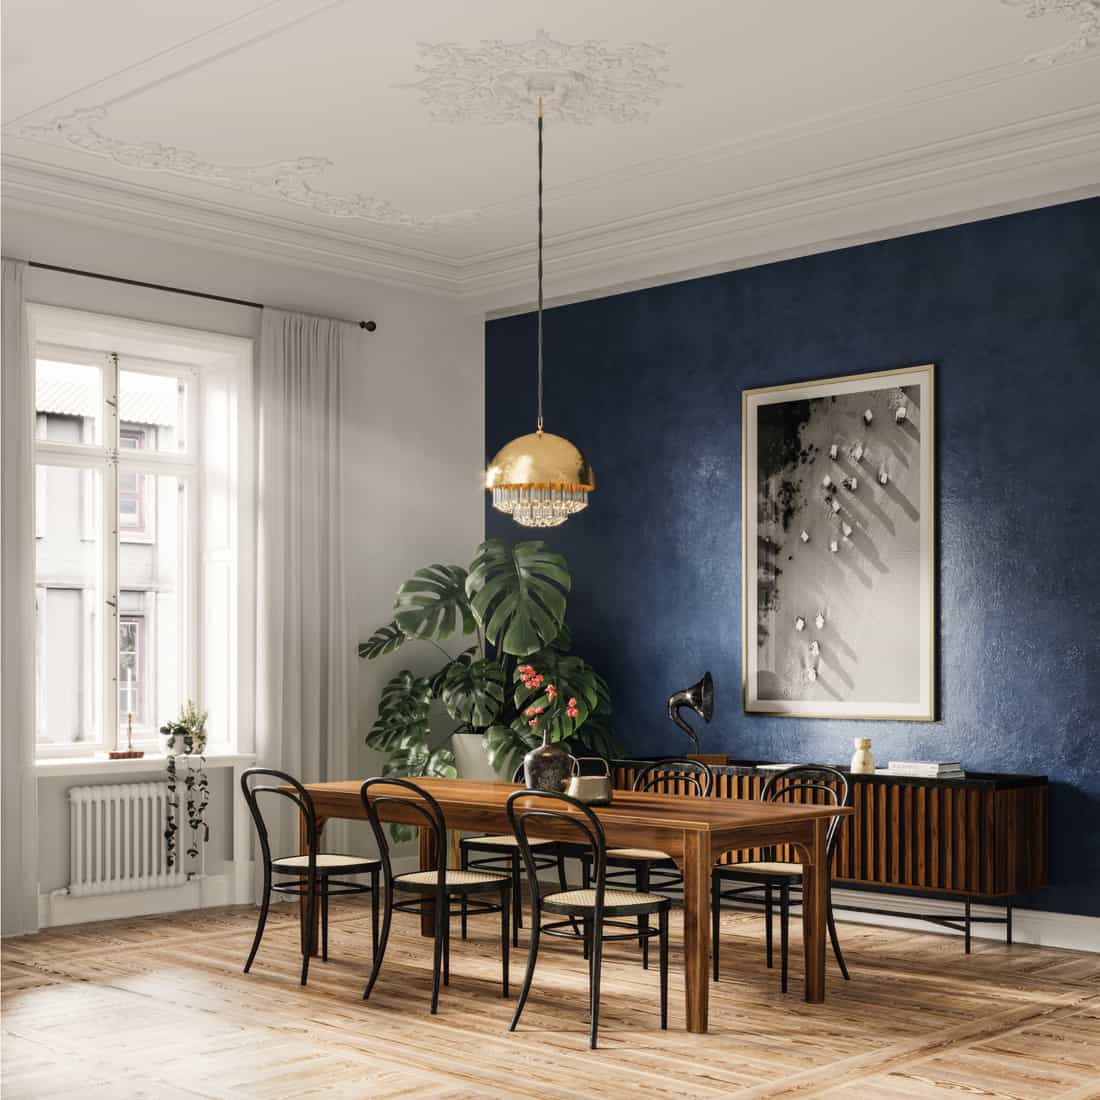 Table à manger élégante dans une maison moderne avec table à manger et chaises, lustre et mur bleu marine